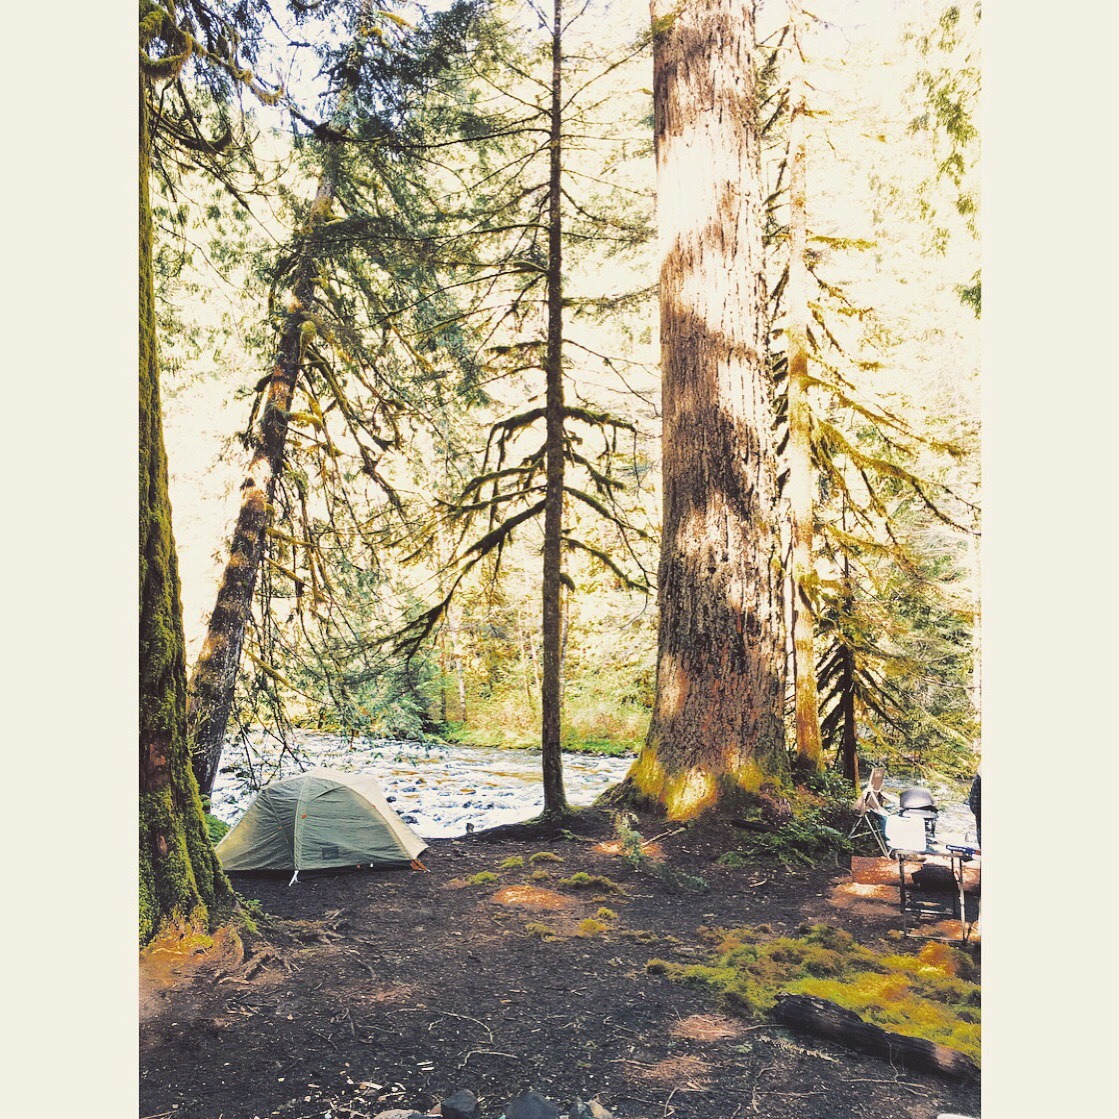 georgiapeachesandpearls:  Camping last weekend was in tents🏕 